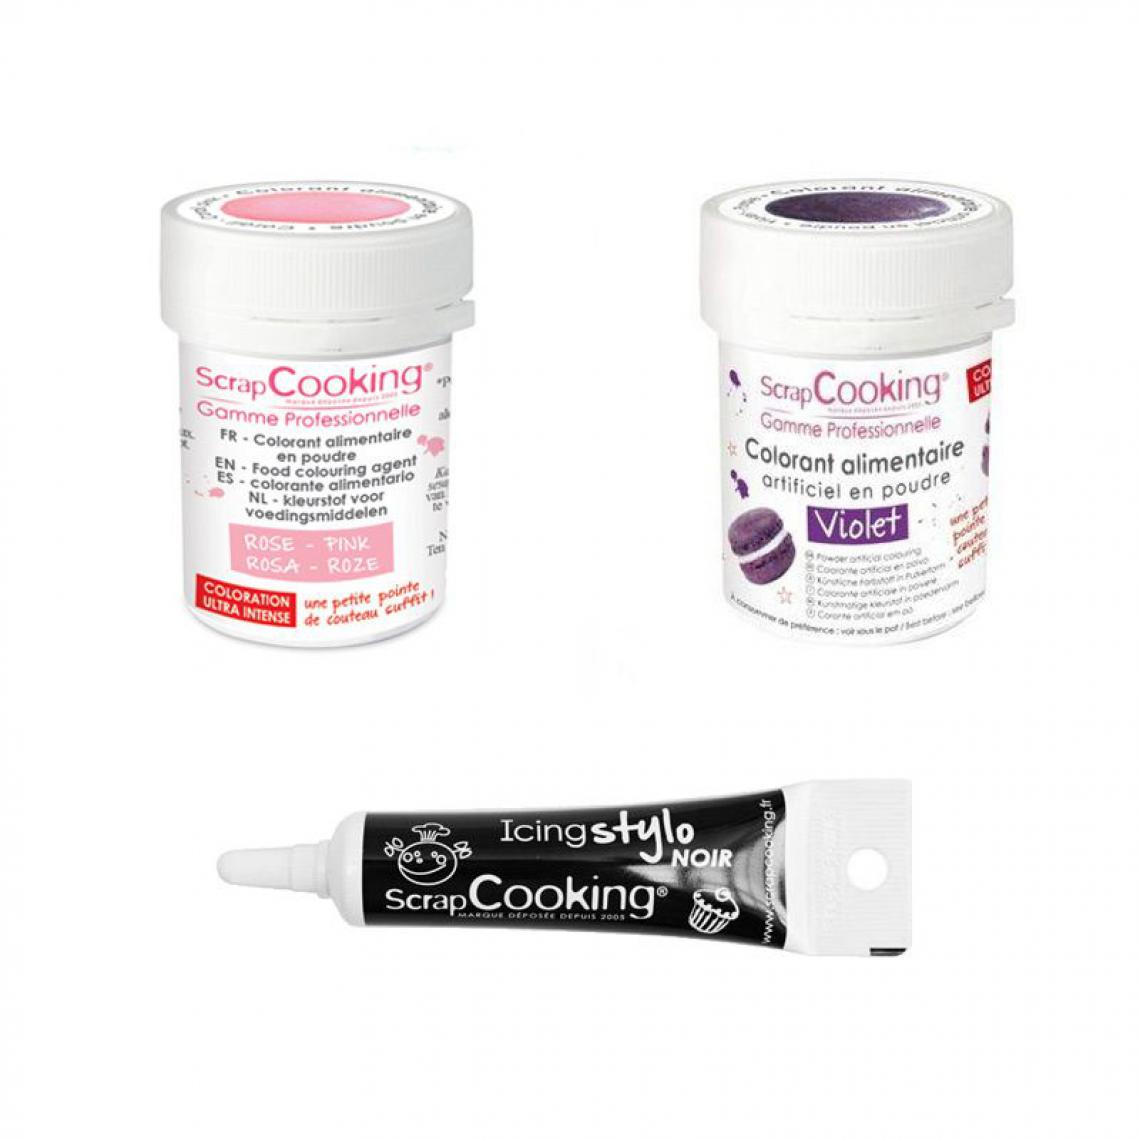 Scrapcooking - 2 colorants alimentaires violet-rose poudré + Stylo glaçage noir - Kits créatifs